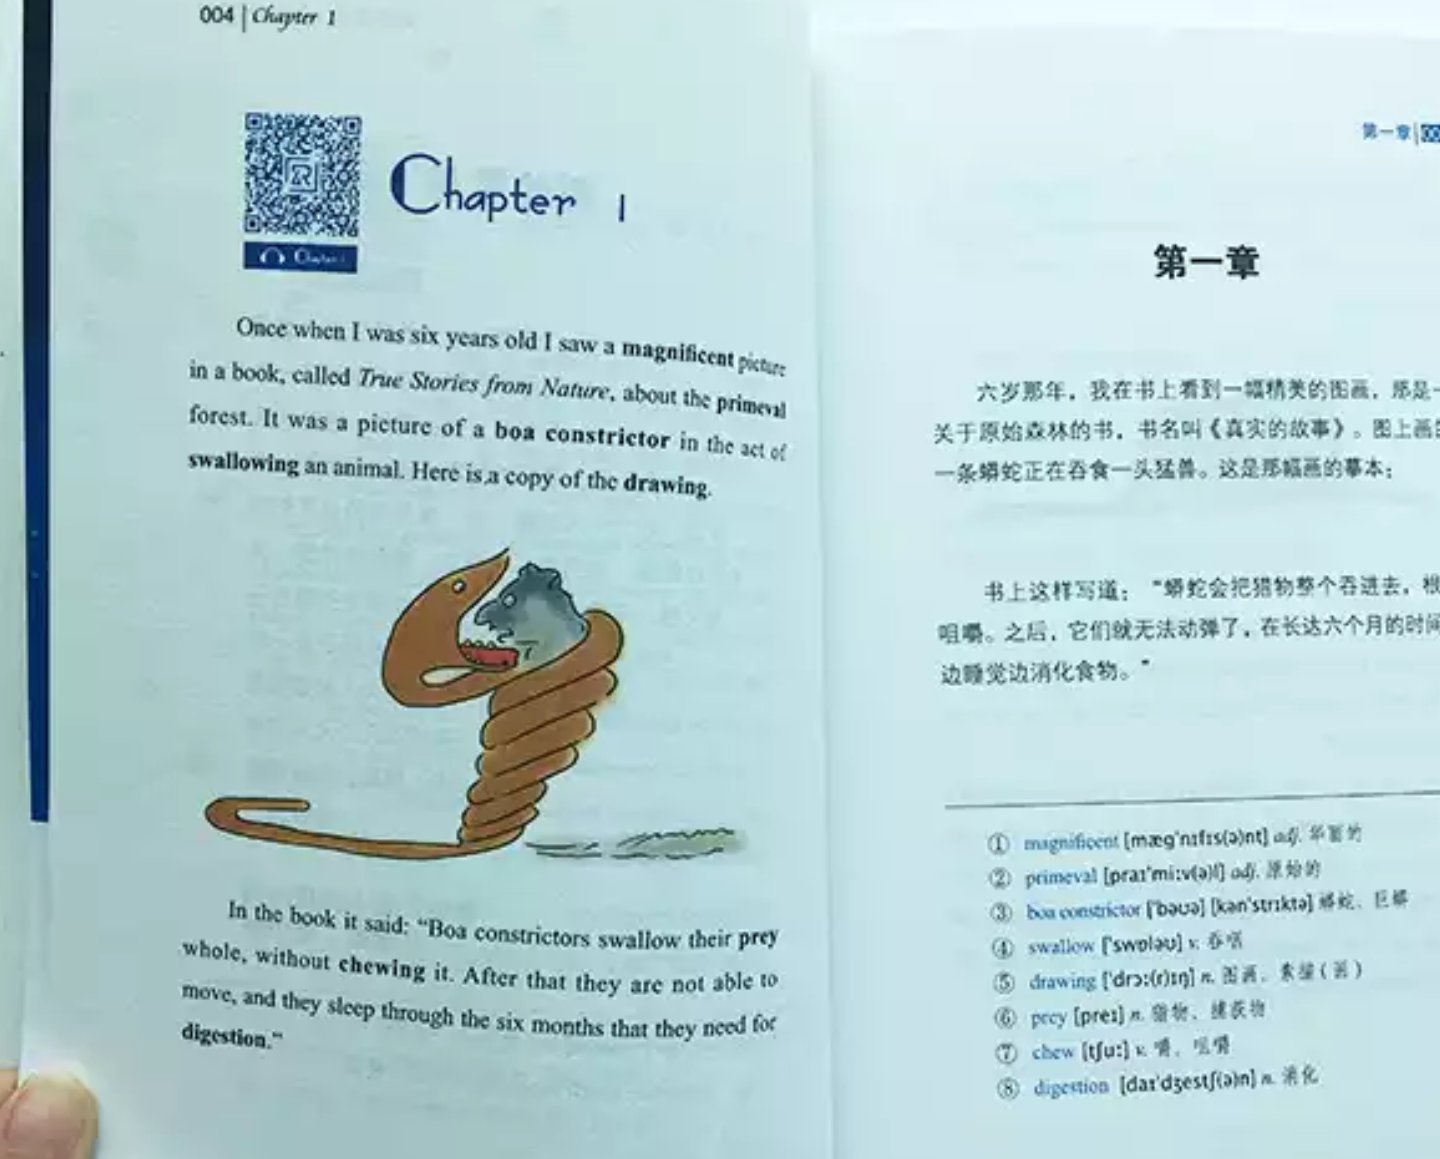 汉语翻译和原文配套，装帧精美，就是价格稍高了些。